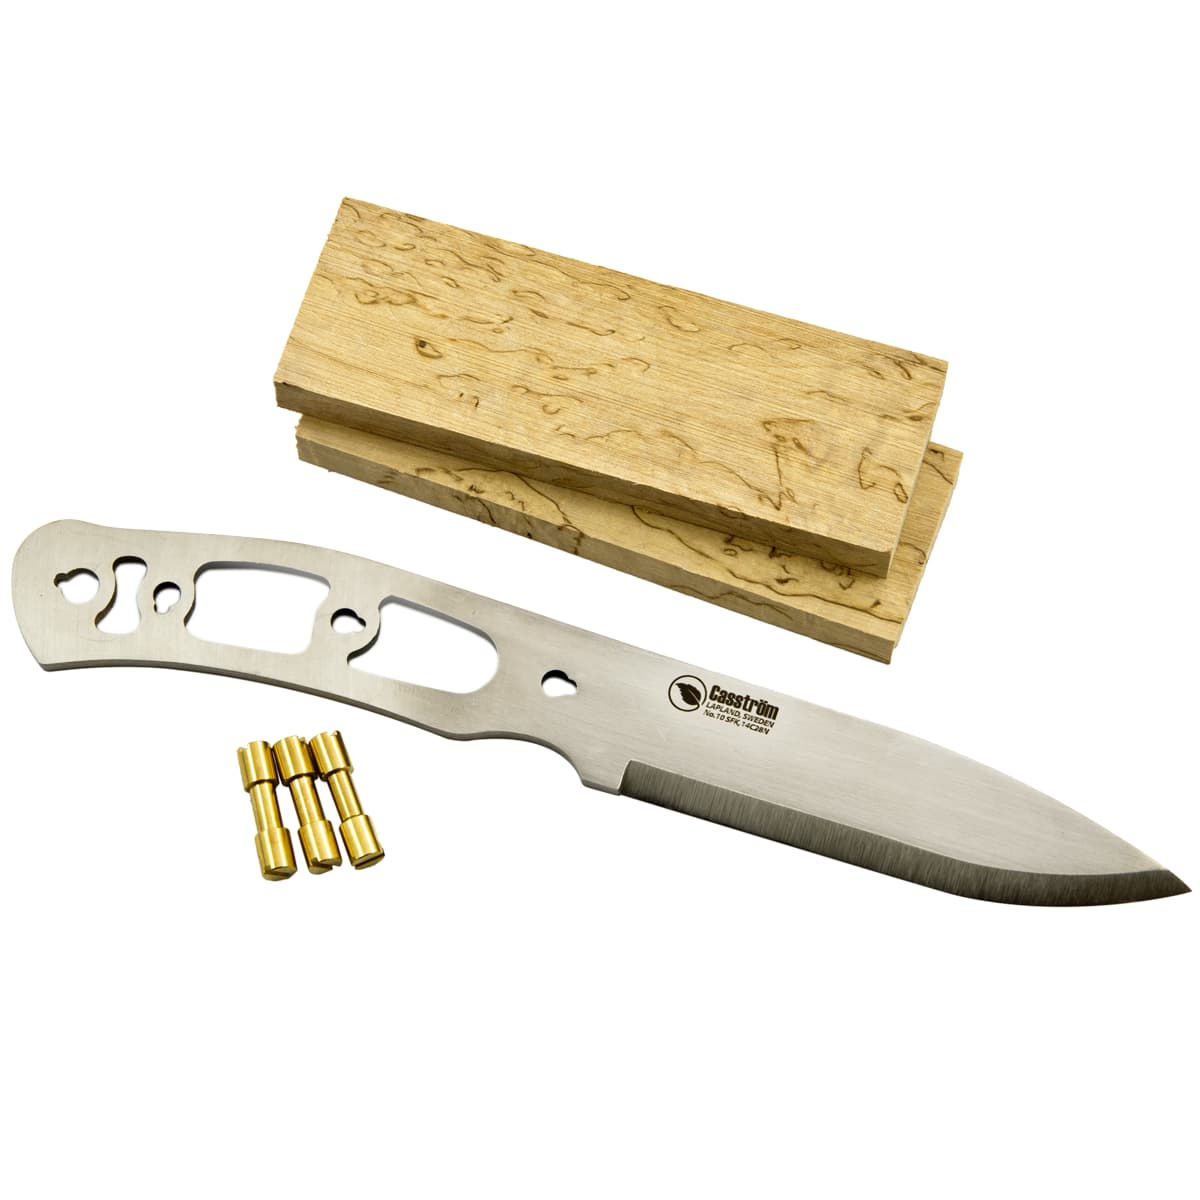 Casstrom Knife Making Kit